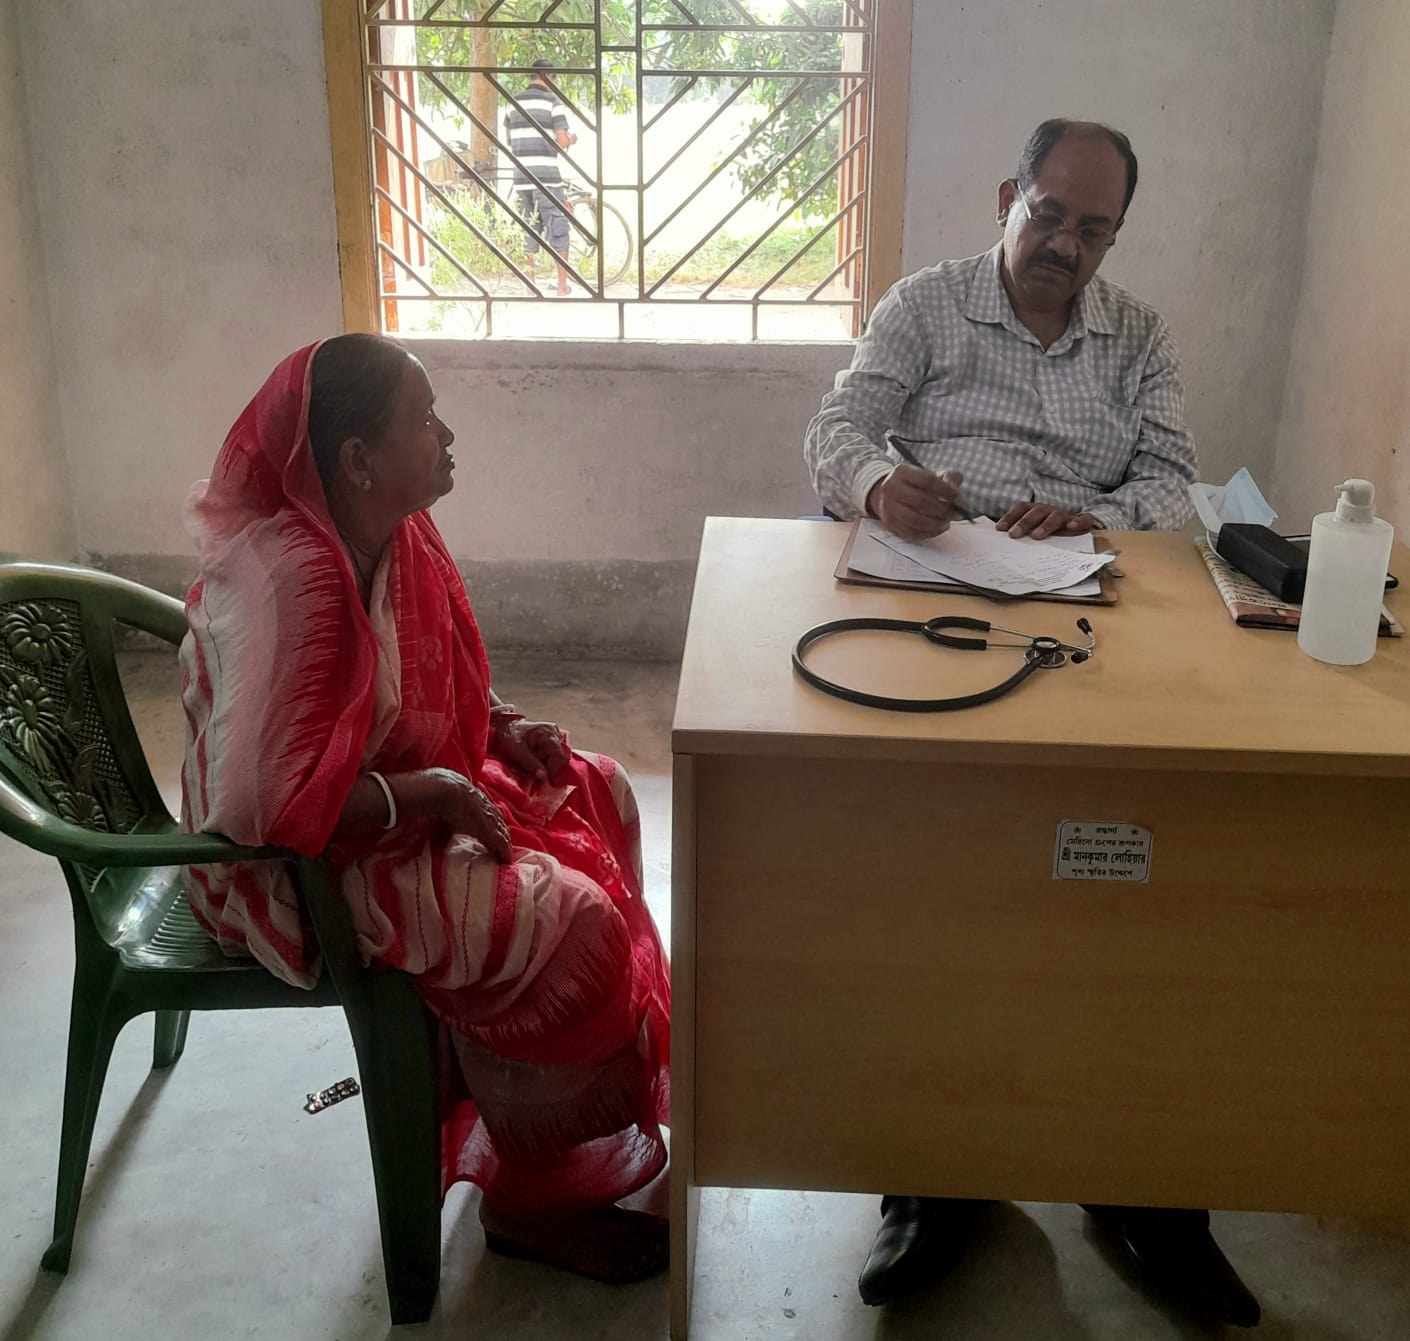 Health Check-Up Camp at Agarhati, Sandeshkhali Block-I on 07 Nov 23